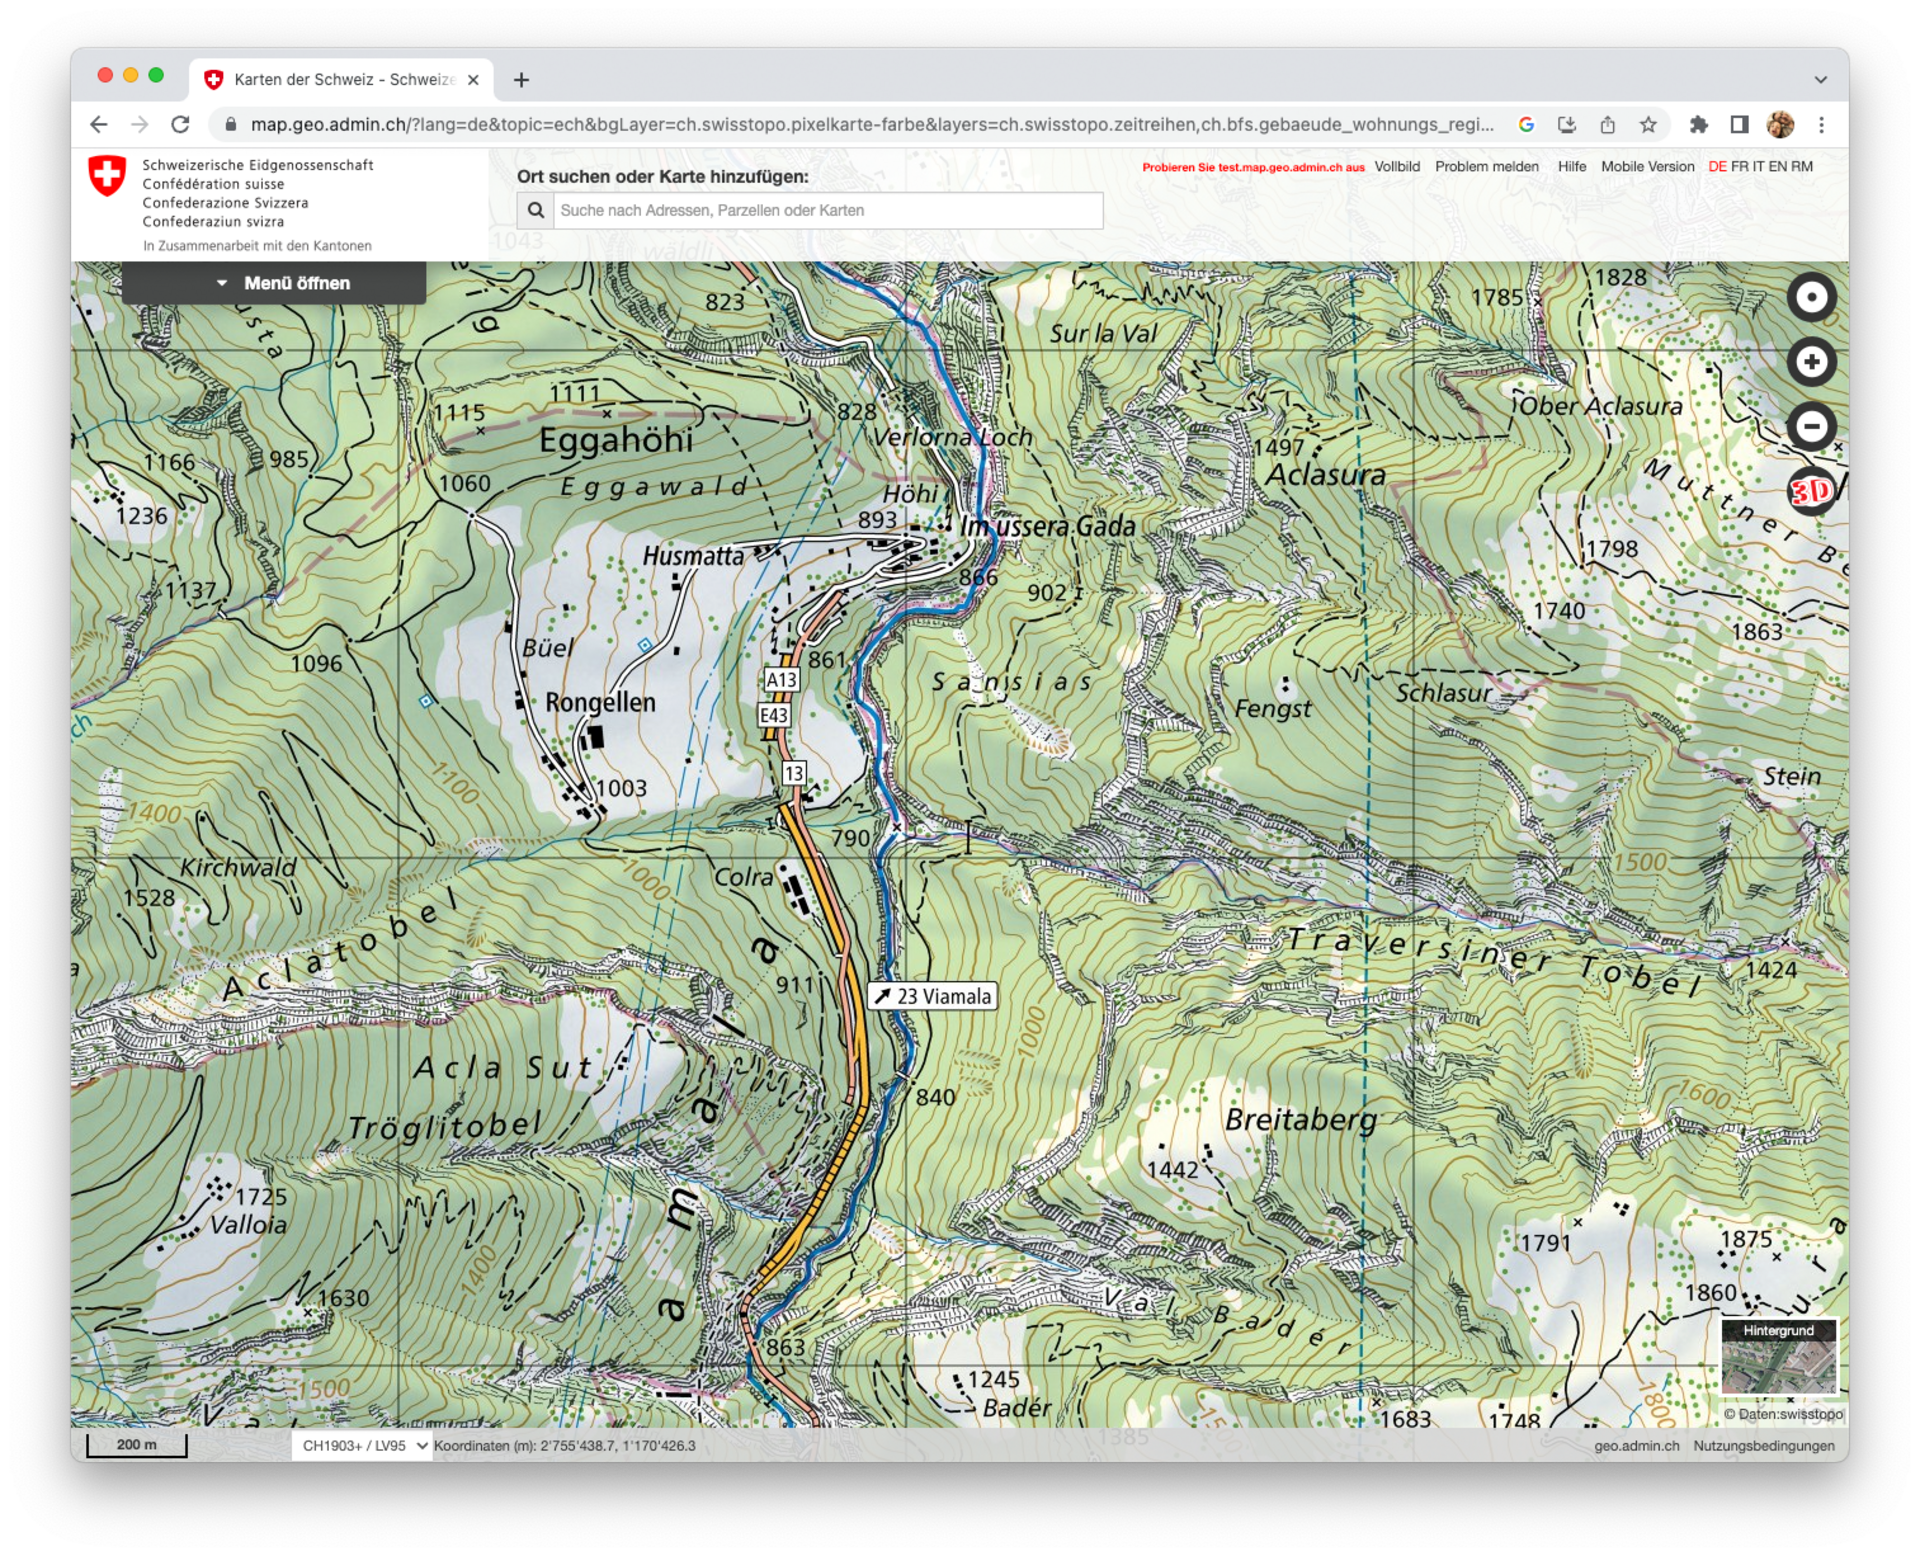  Die Schweizer Landeskarte (map.geo.admin.ch) bietet viele Informationen für die Planung.  